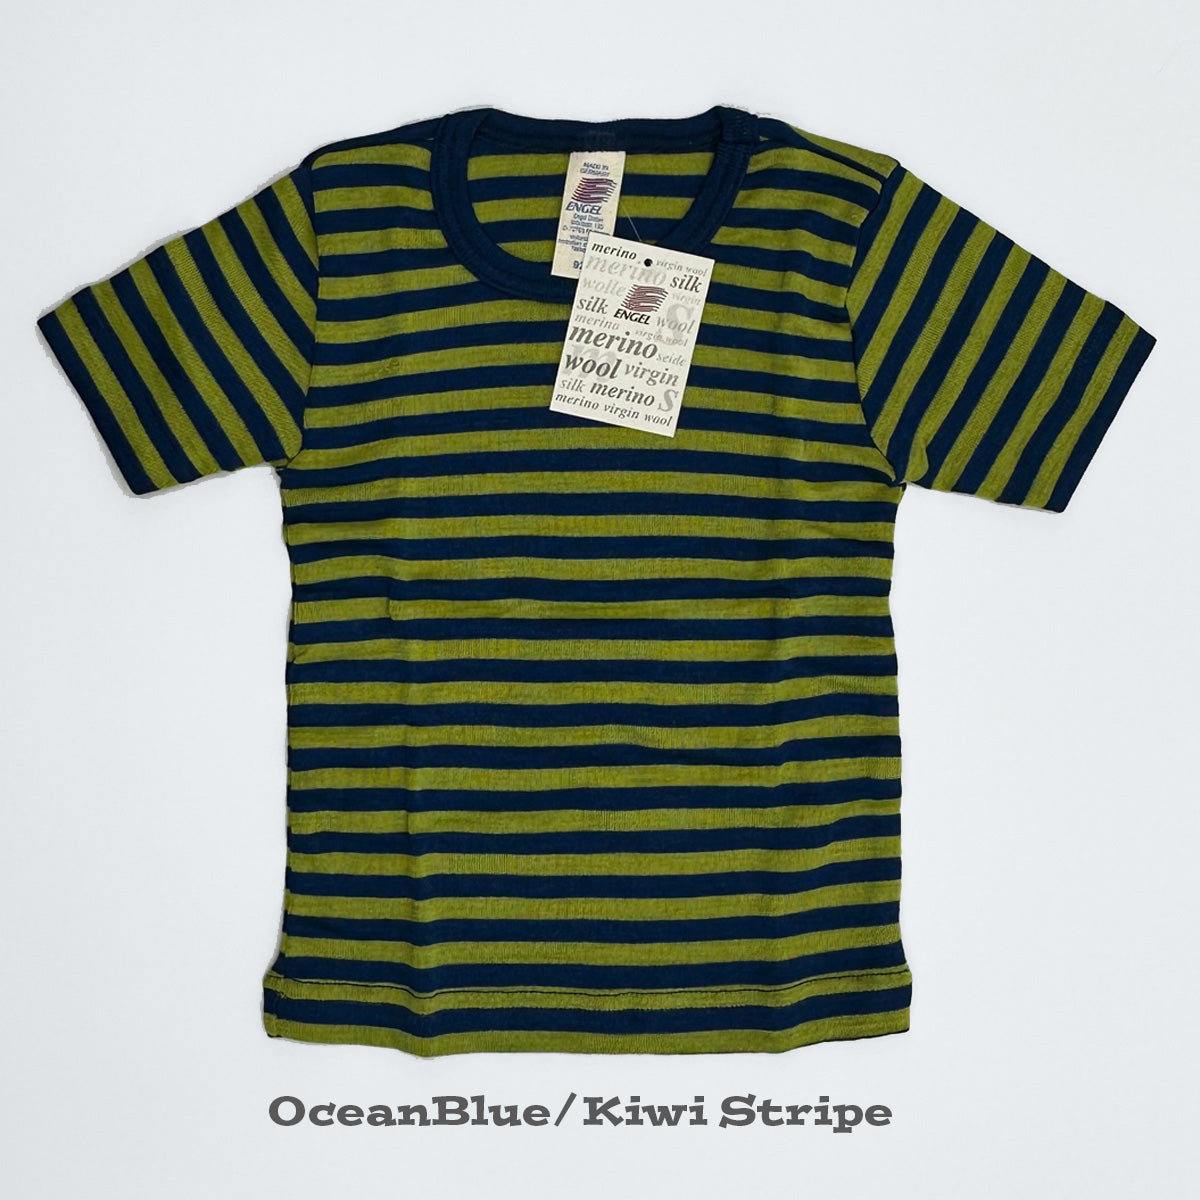 ENGEL Kids' Organic Wool/Silk Undershirt with Short Sleeves - STRIPED